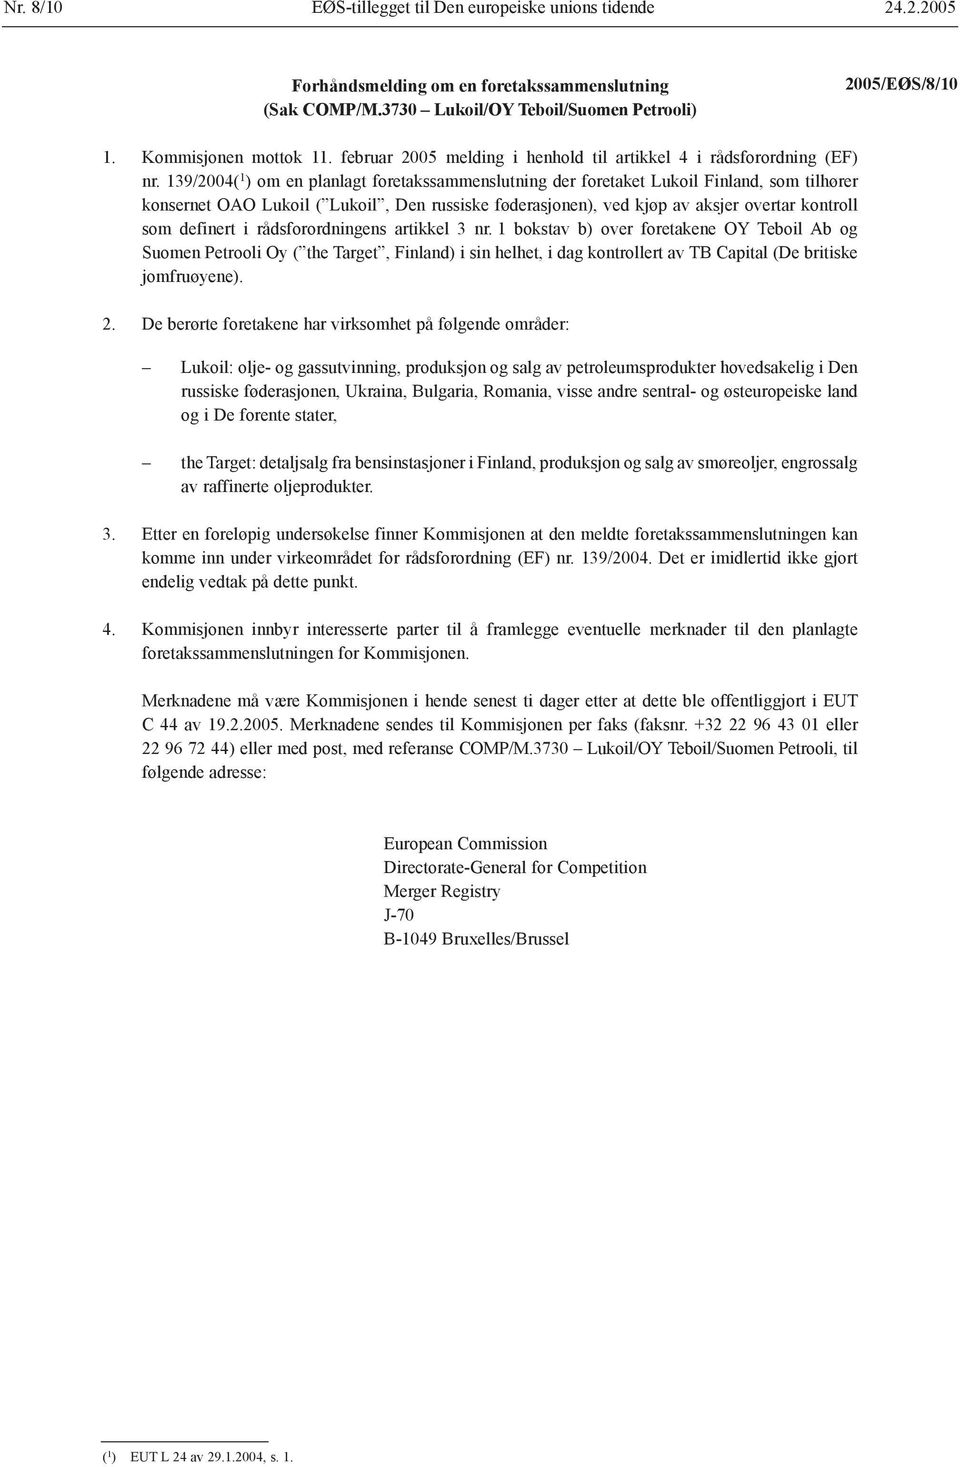 139/2004( 1 ) om en planlagt foretakssammenslutning der foretaket Lukoil Finland, som tilhører konsernet OAO Lukoil ( Lukoil, Den russiske føderasjonen), ved kjøp av aksjer overtar kontroll som